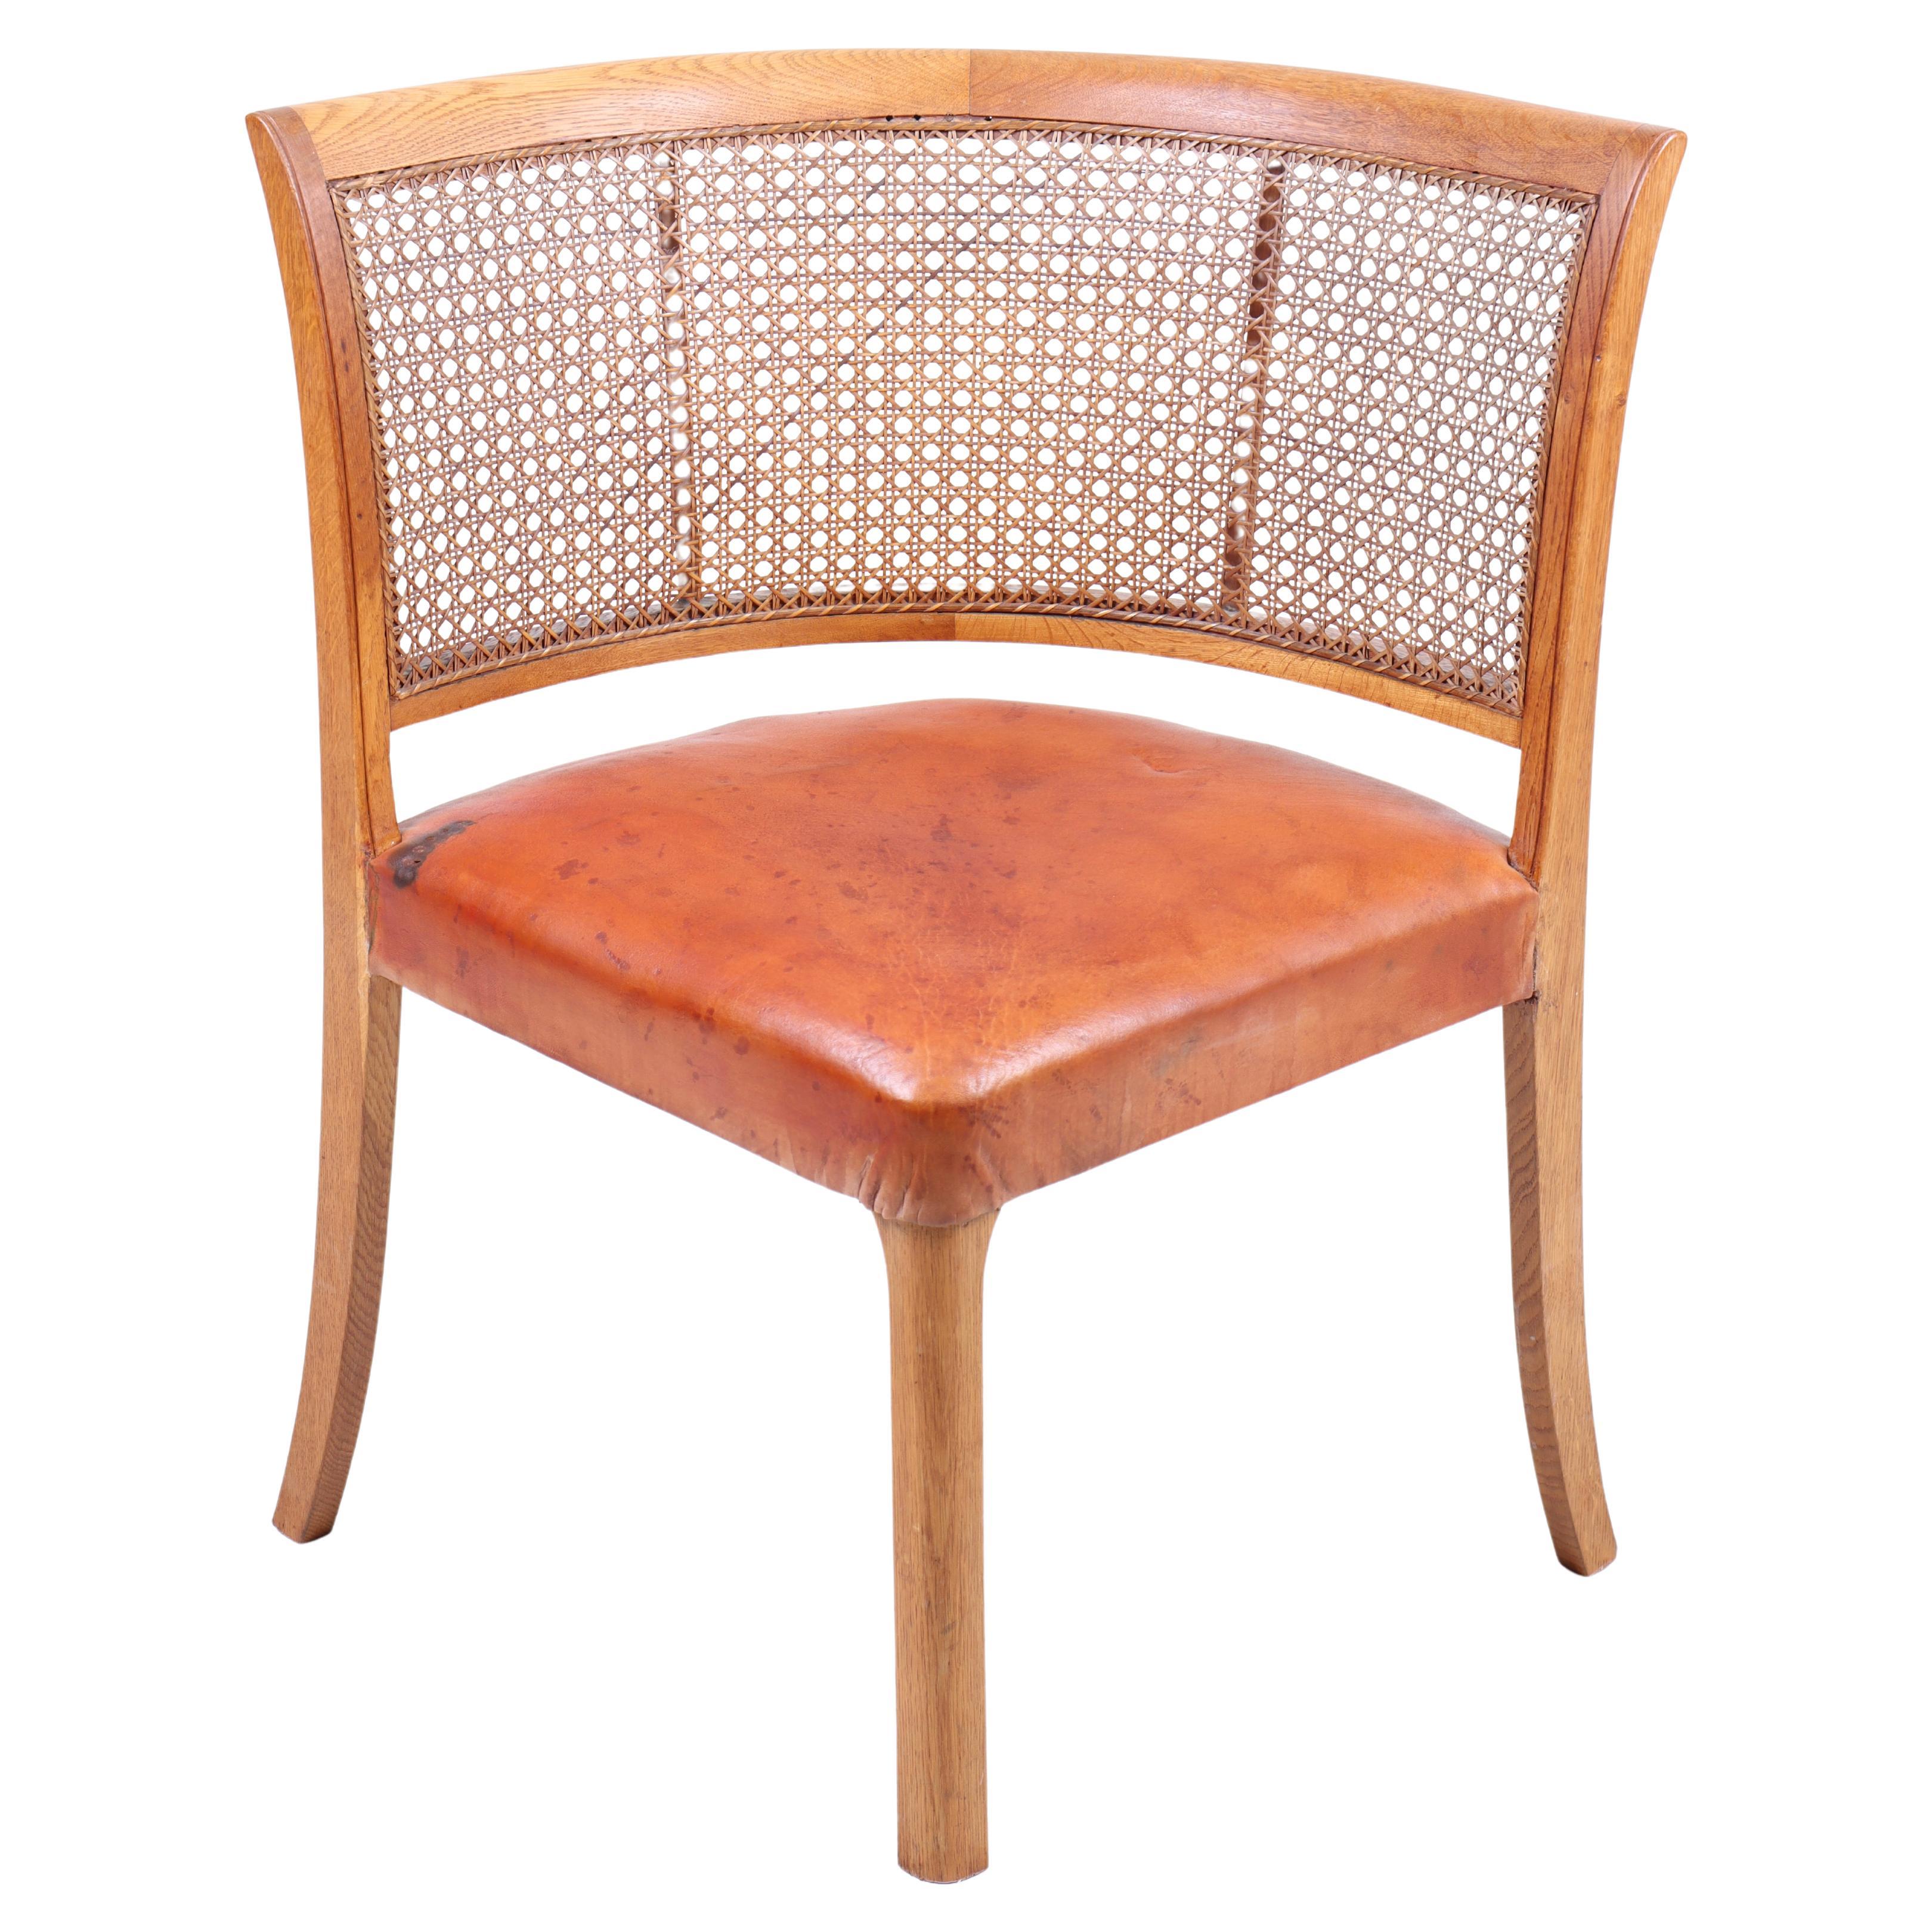 Dänischer Beistellstuhl aus Eiche und cognacfarbenem Leder, 1940er Jahre